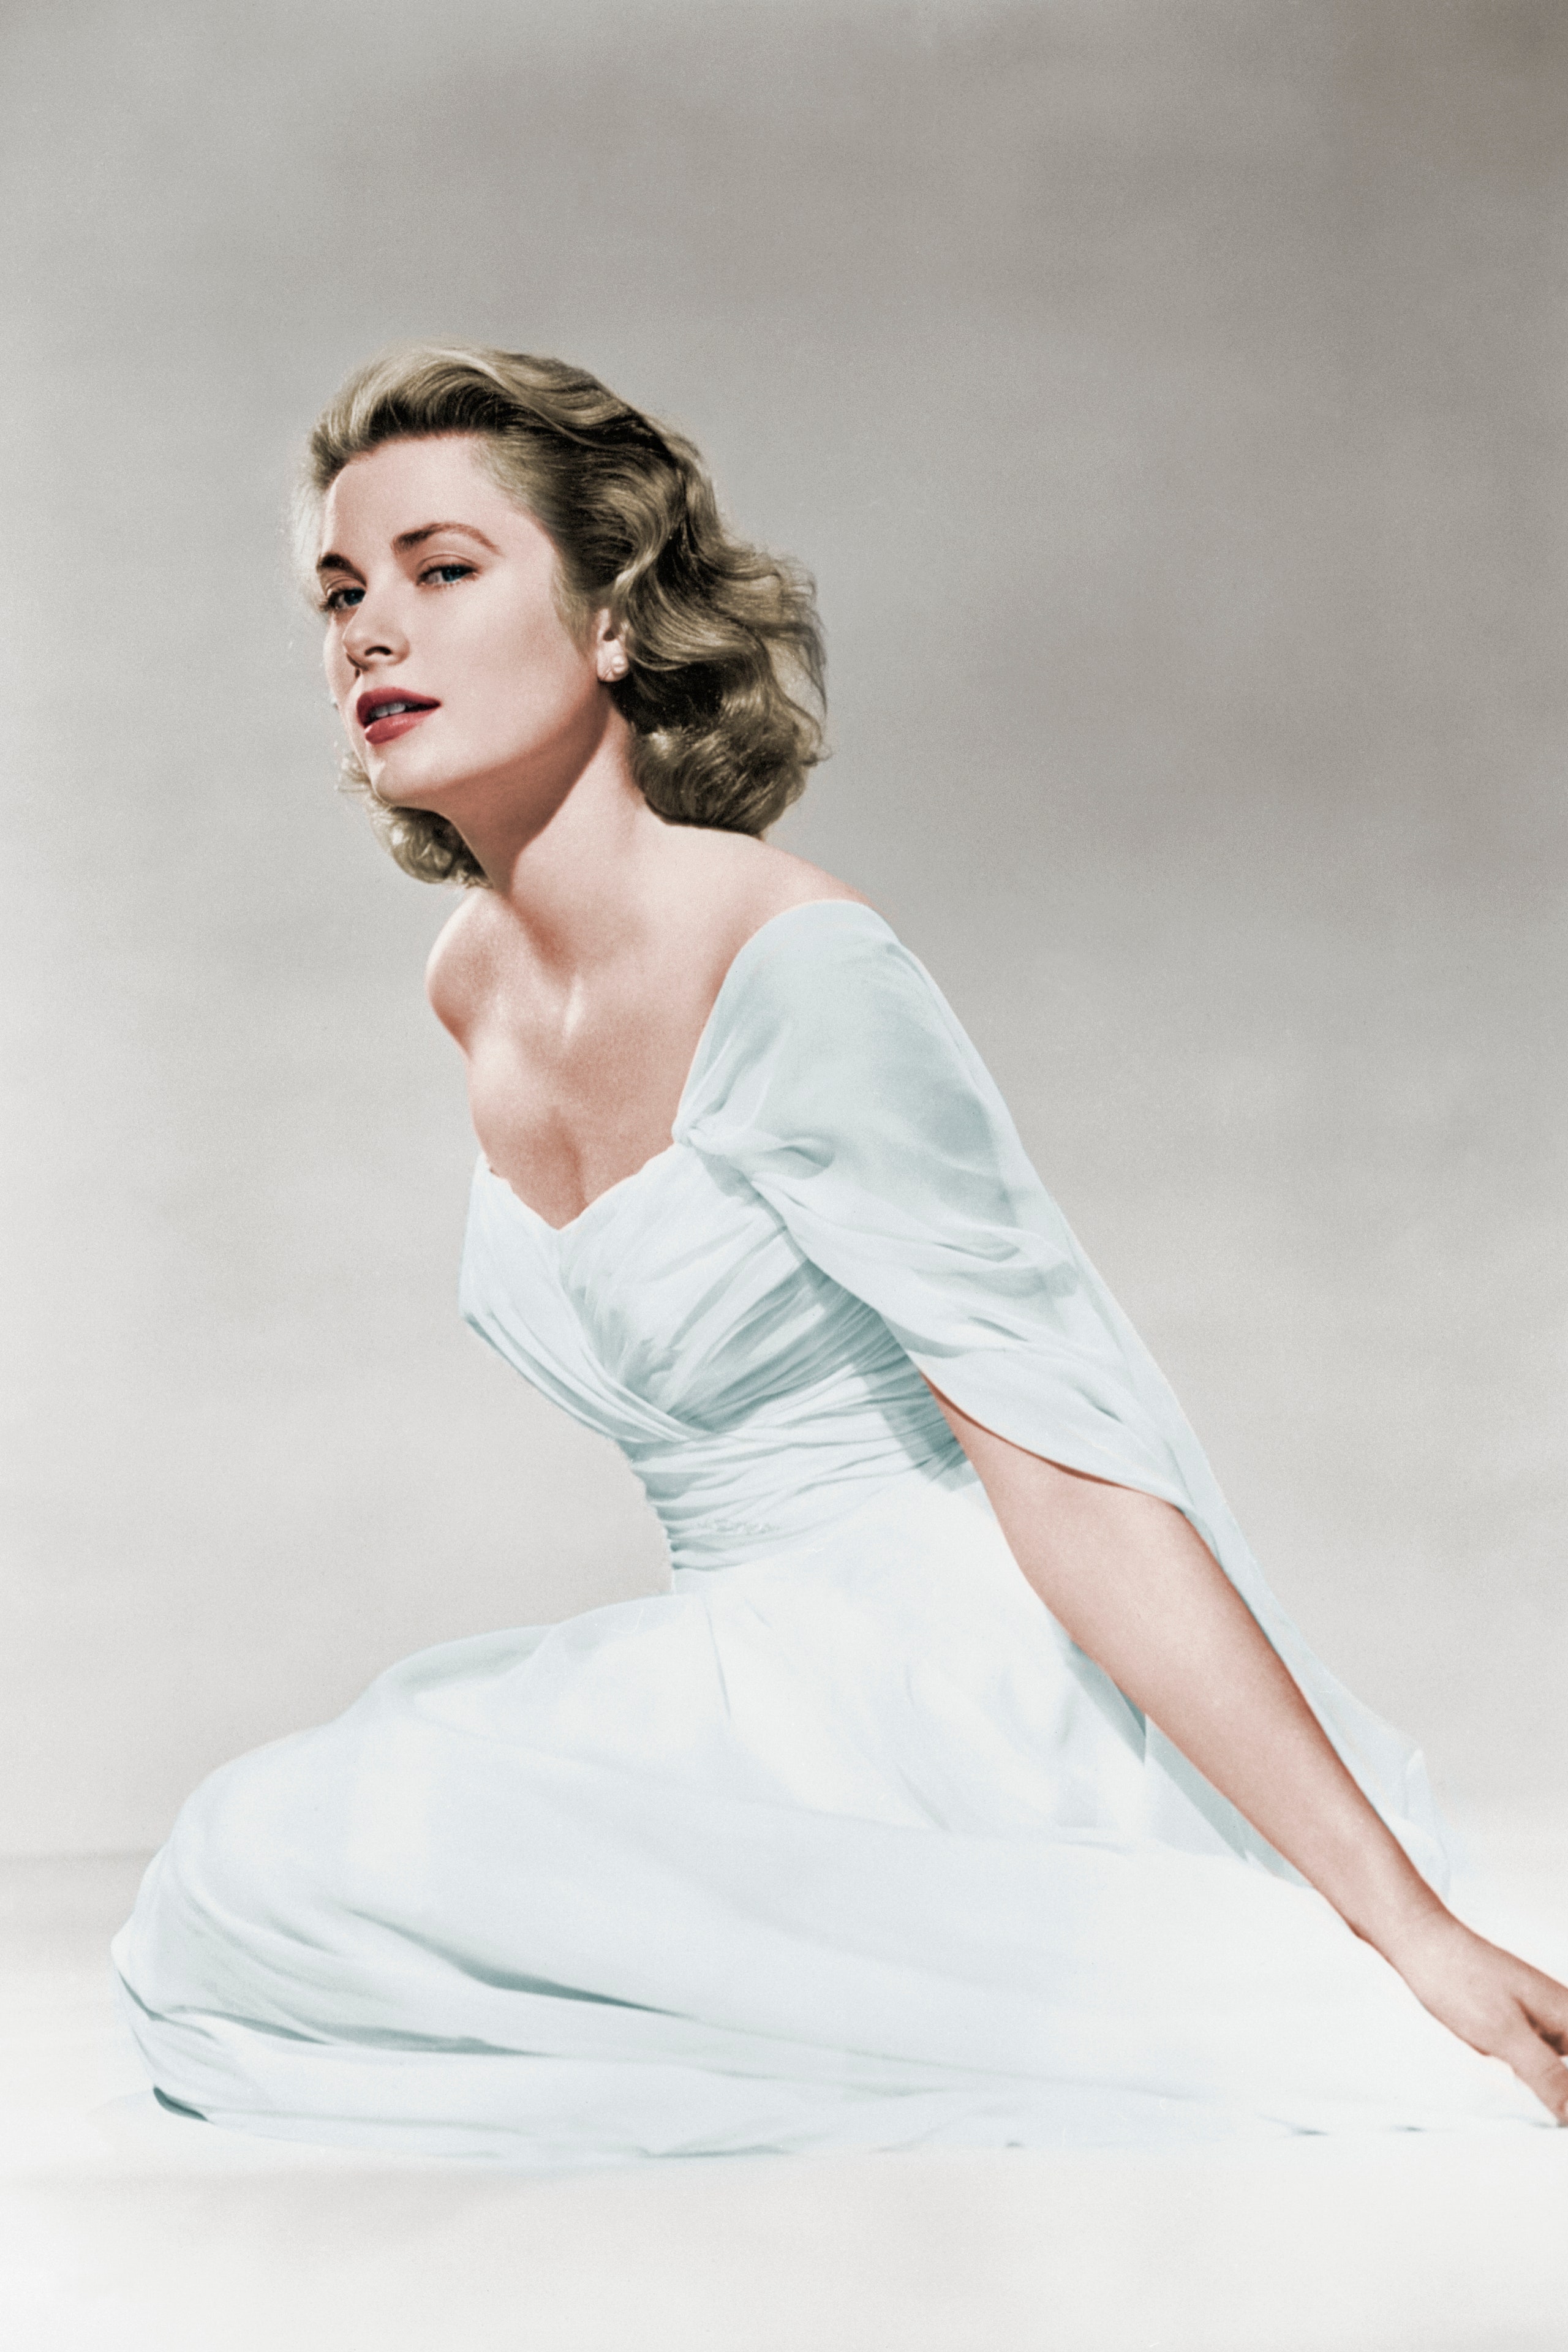 Платья в стиле 50-х годов: фото вечерних и повседневных моделей